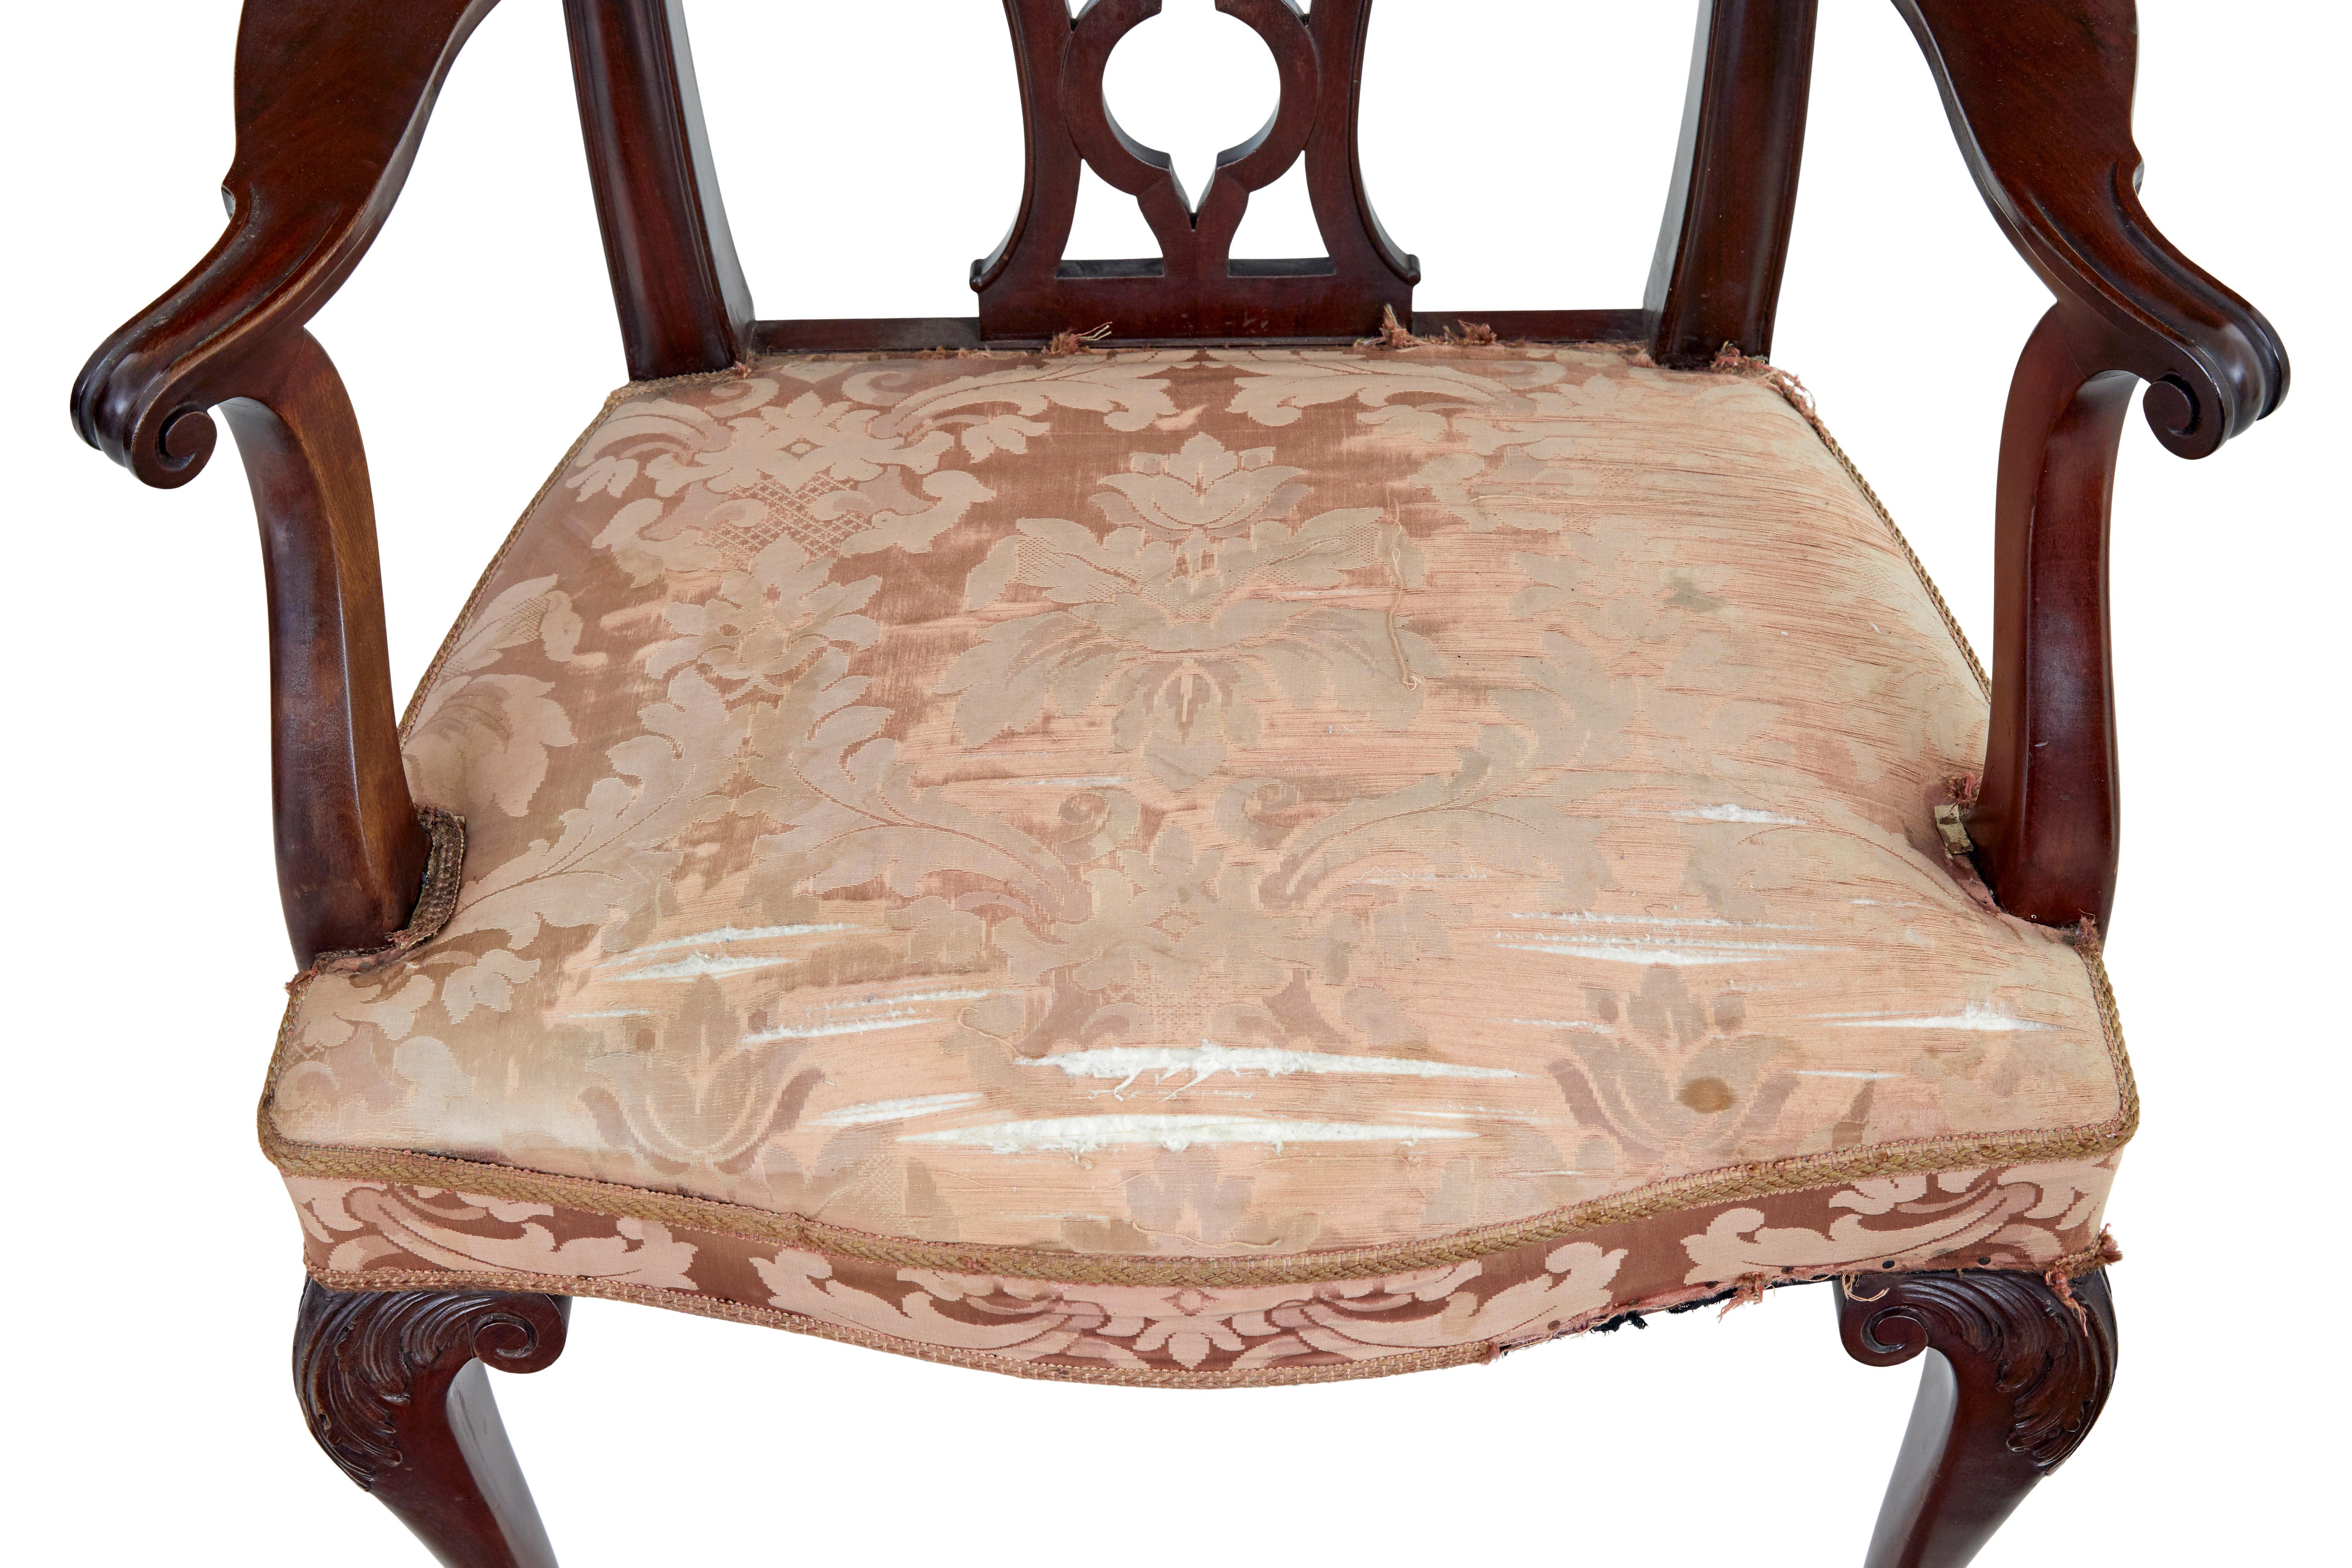 Paar Chippendale-Revival-Sessel aus dem frühen 20. Jahrhundert, ca. 1923.

Ein Paar Mahagoni-Sessel des bekannten schwedischen Herstellers nordiska kompaniet in guter Qualität.  Handgeschnitzt mit einem von Chippendale inspirierten Design.  Geformte